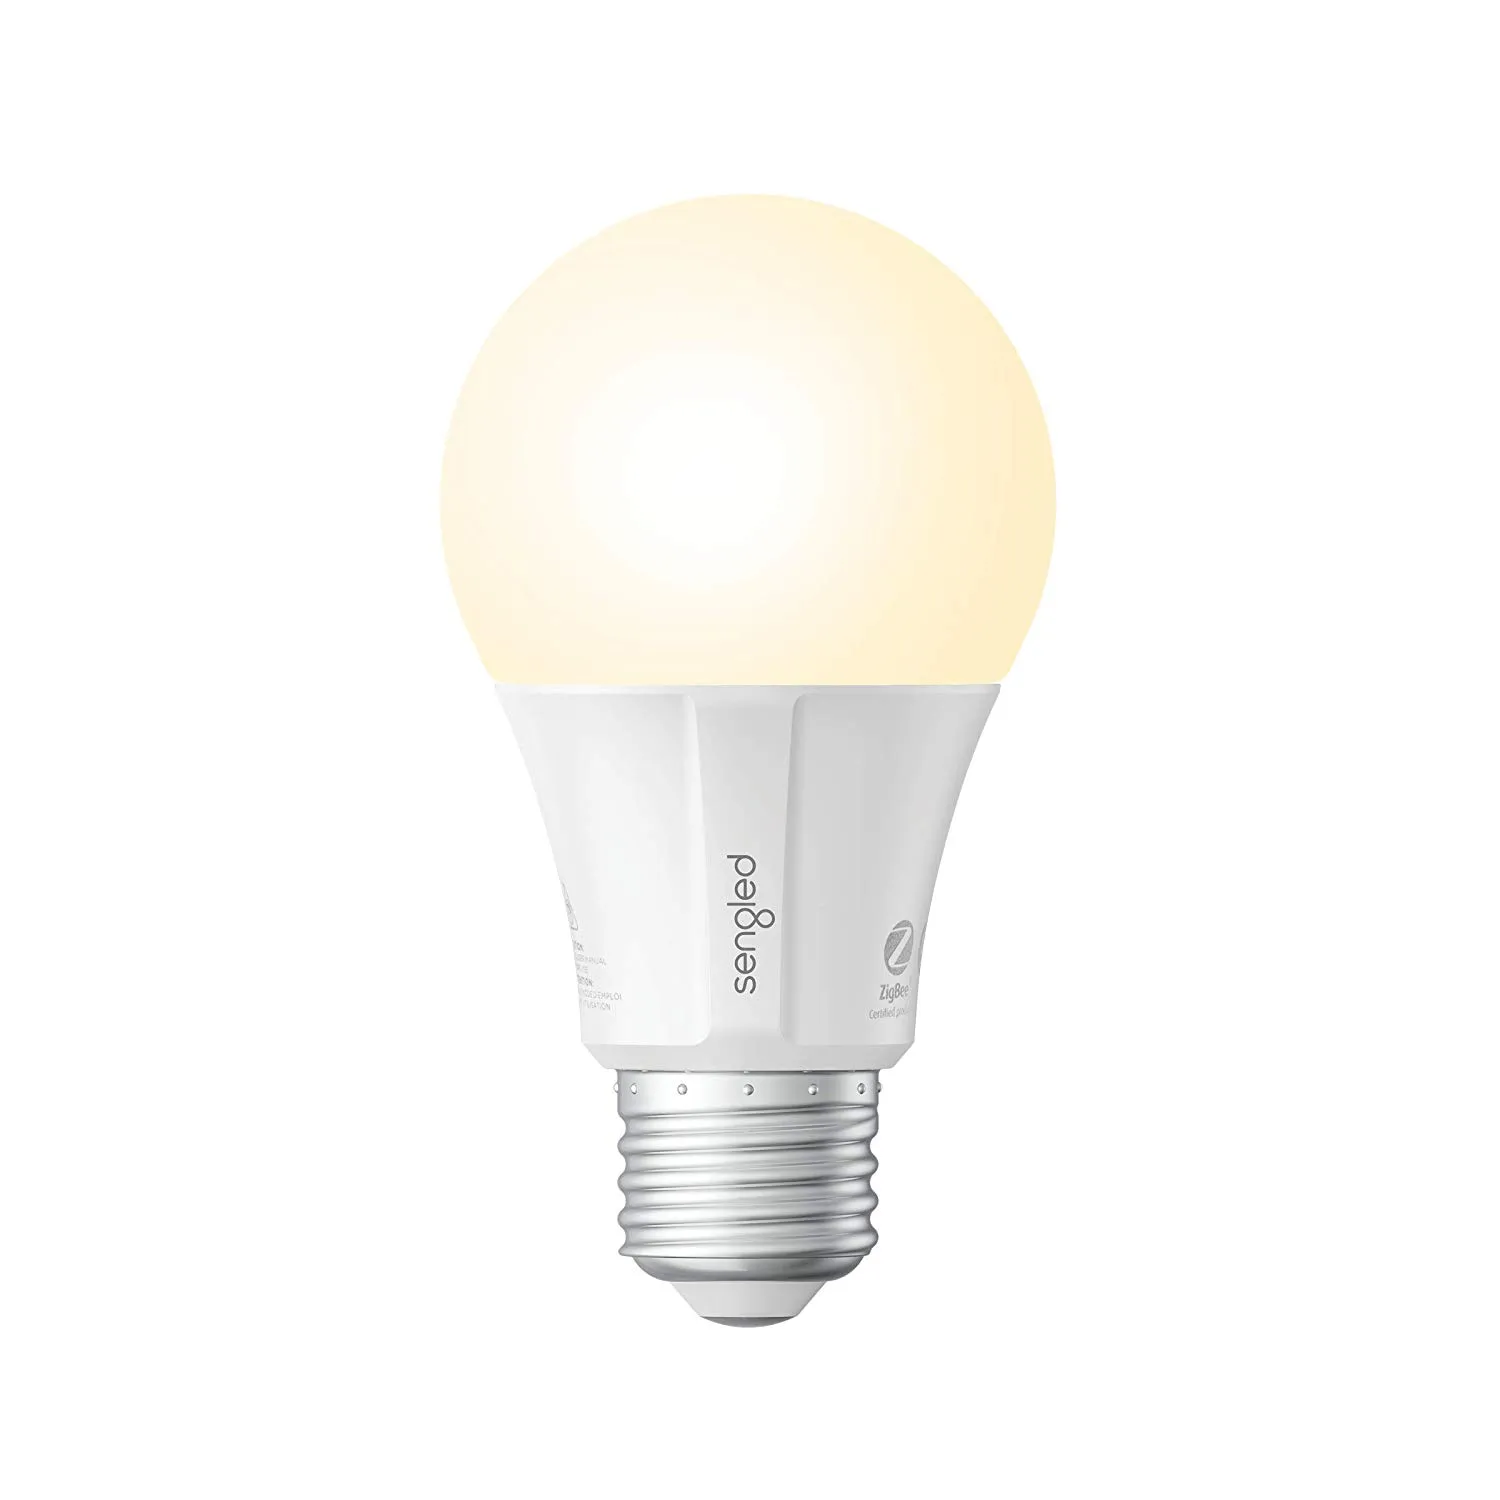 Soft White A19 Bulb